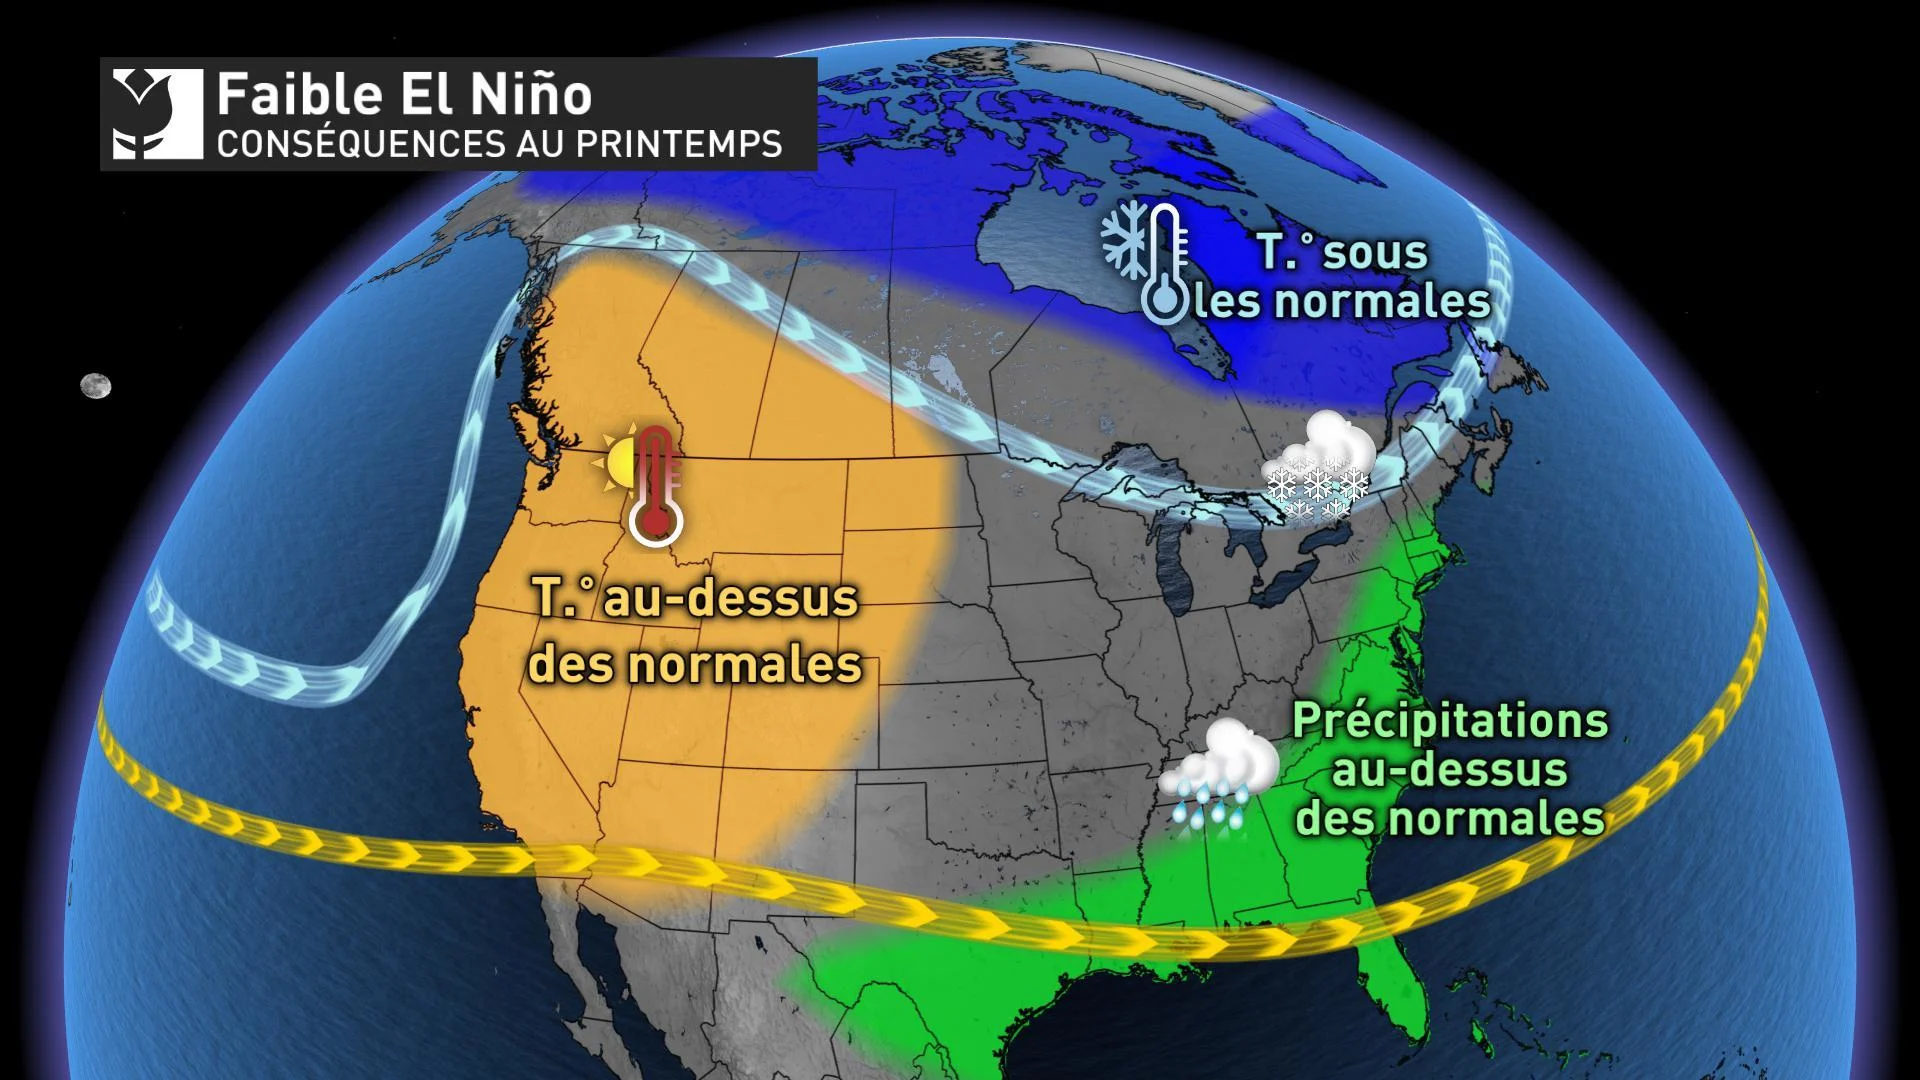 El Nino 2